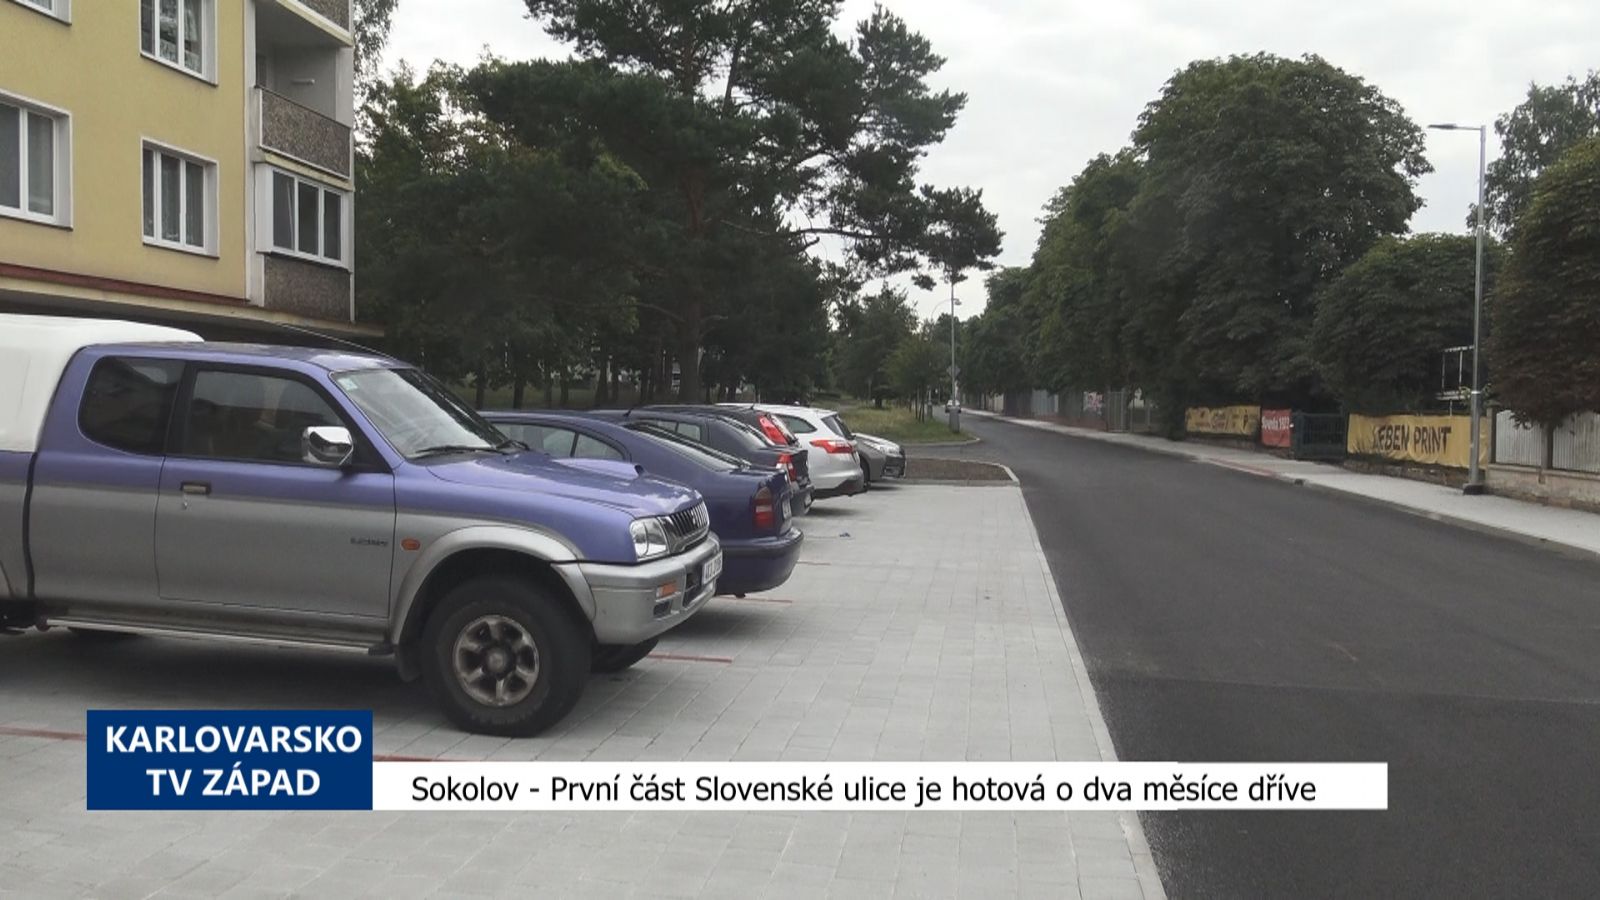 Sokolov: První část Slovenské ulice je hotová o dva měsíce dříve (TV Západ)